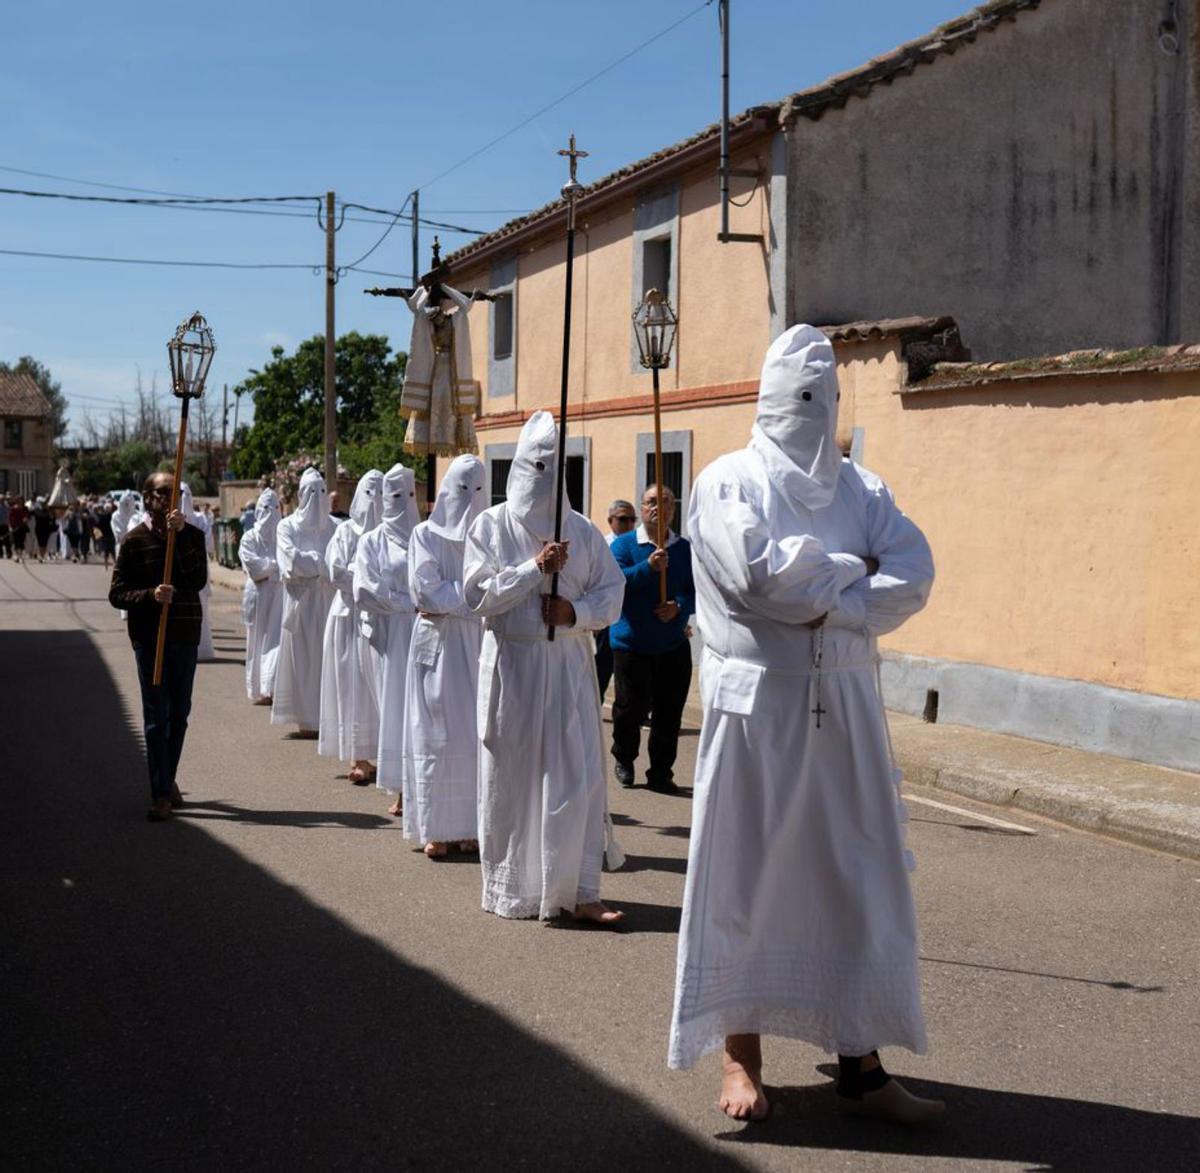 Los penitentes de Villarrín avanzan descalzos por Pajares. | Emilio Fraile